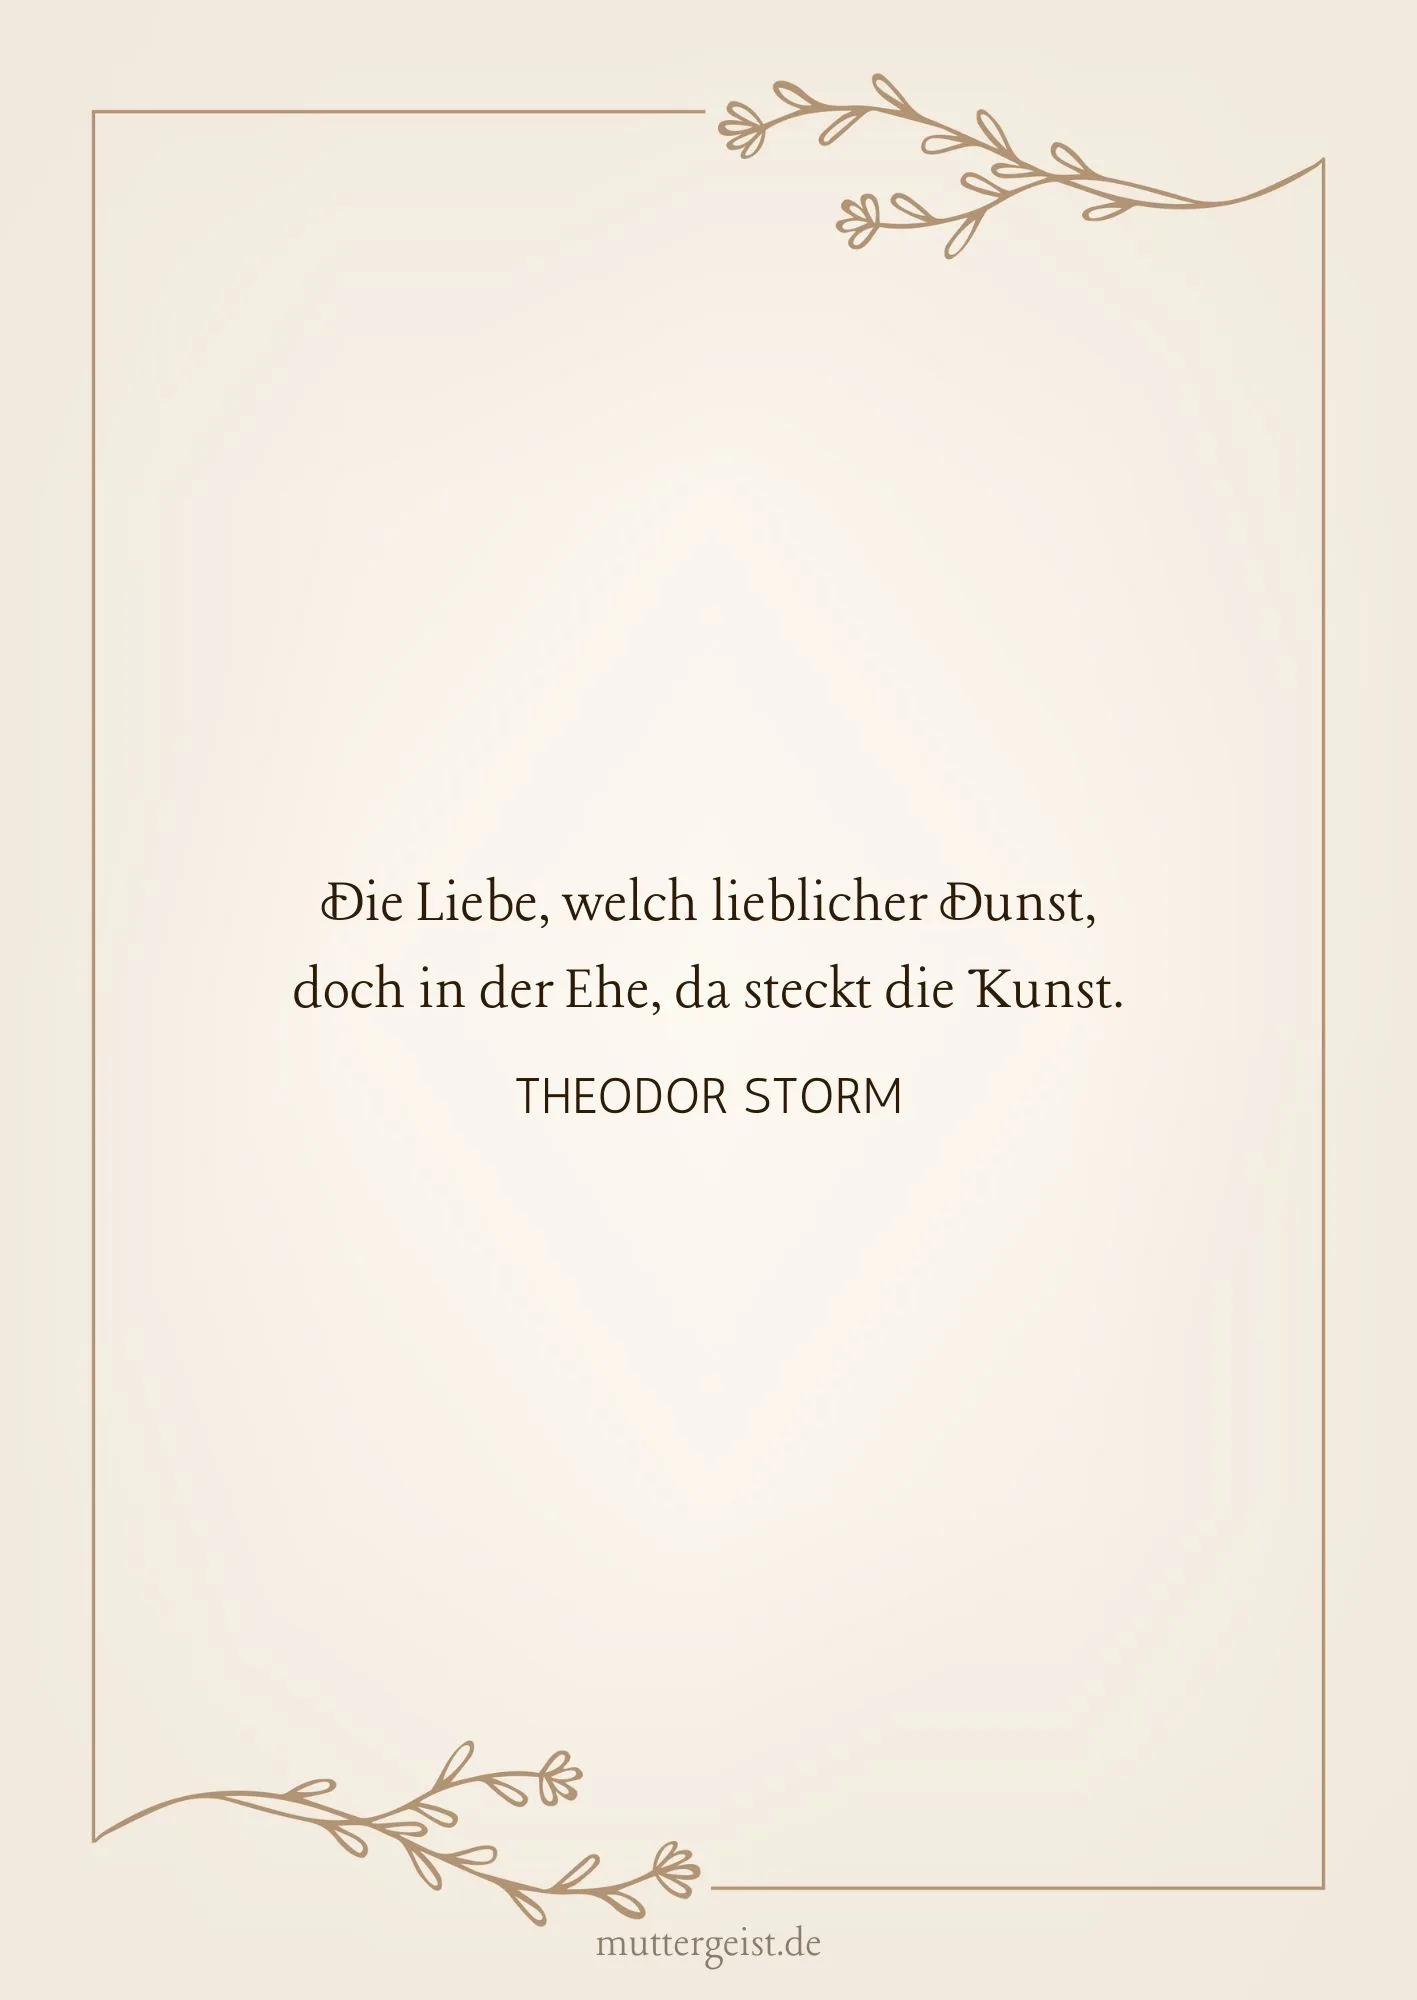 Theodor Storm-Zitat zum 50. Hochzeitstag